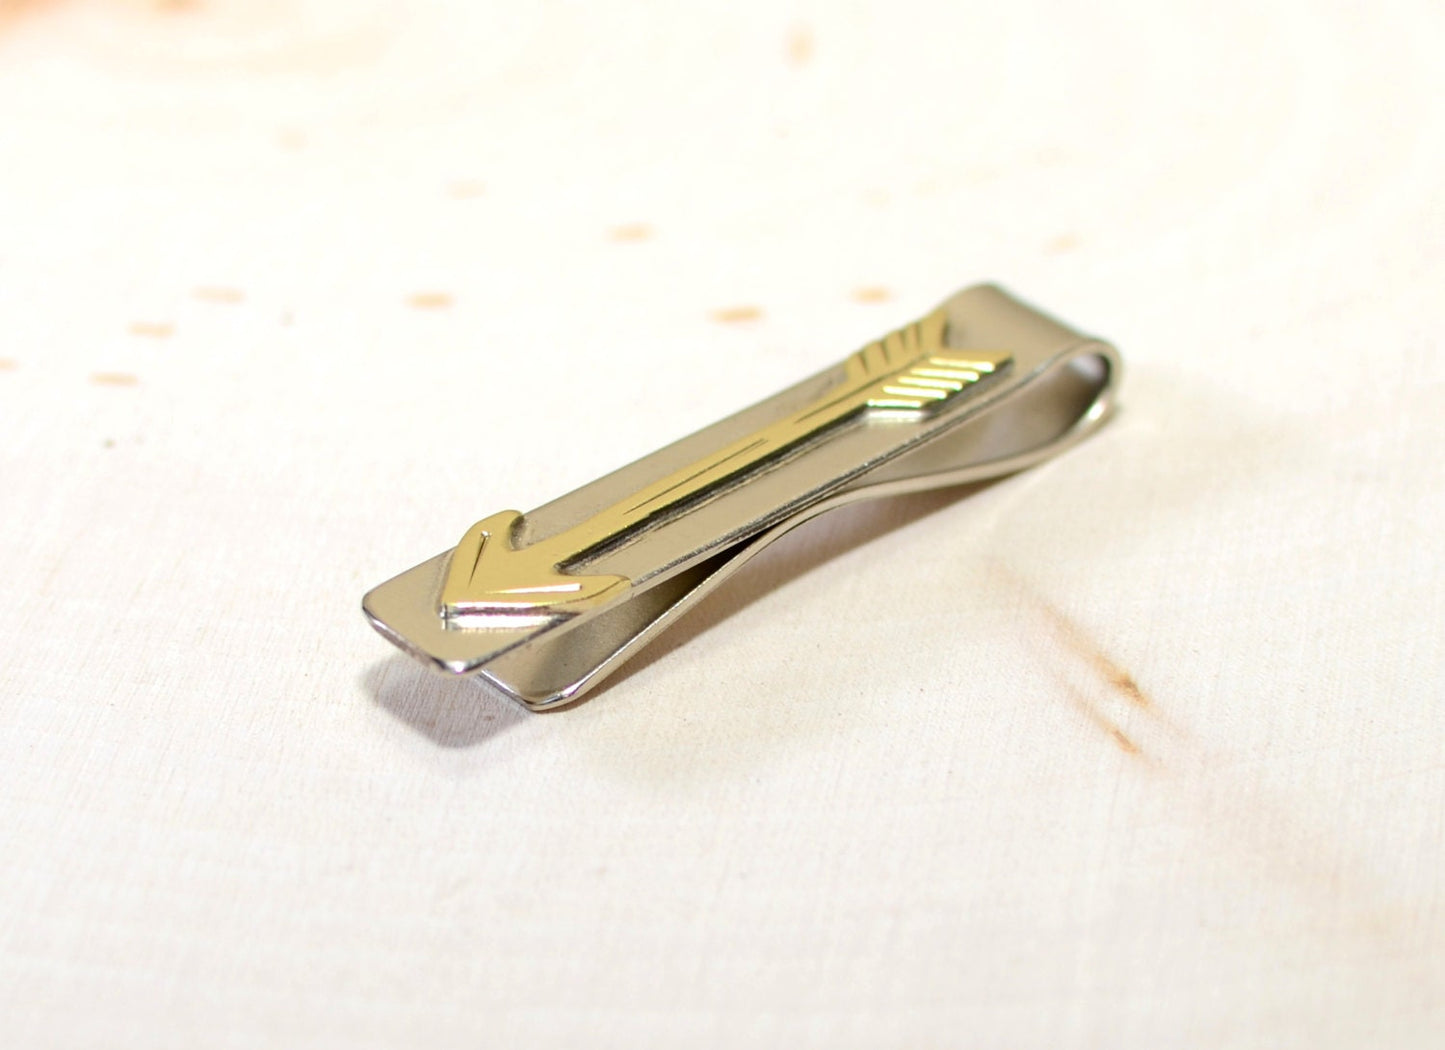 Brass arrow on sterling silver tie clip